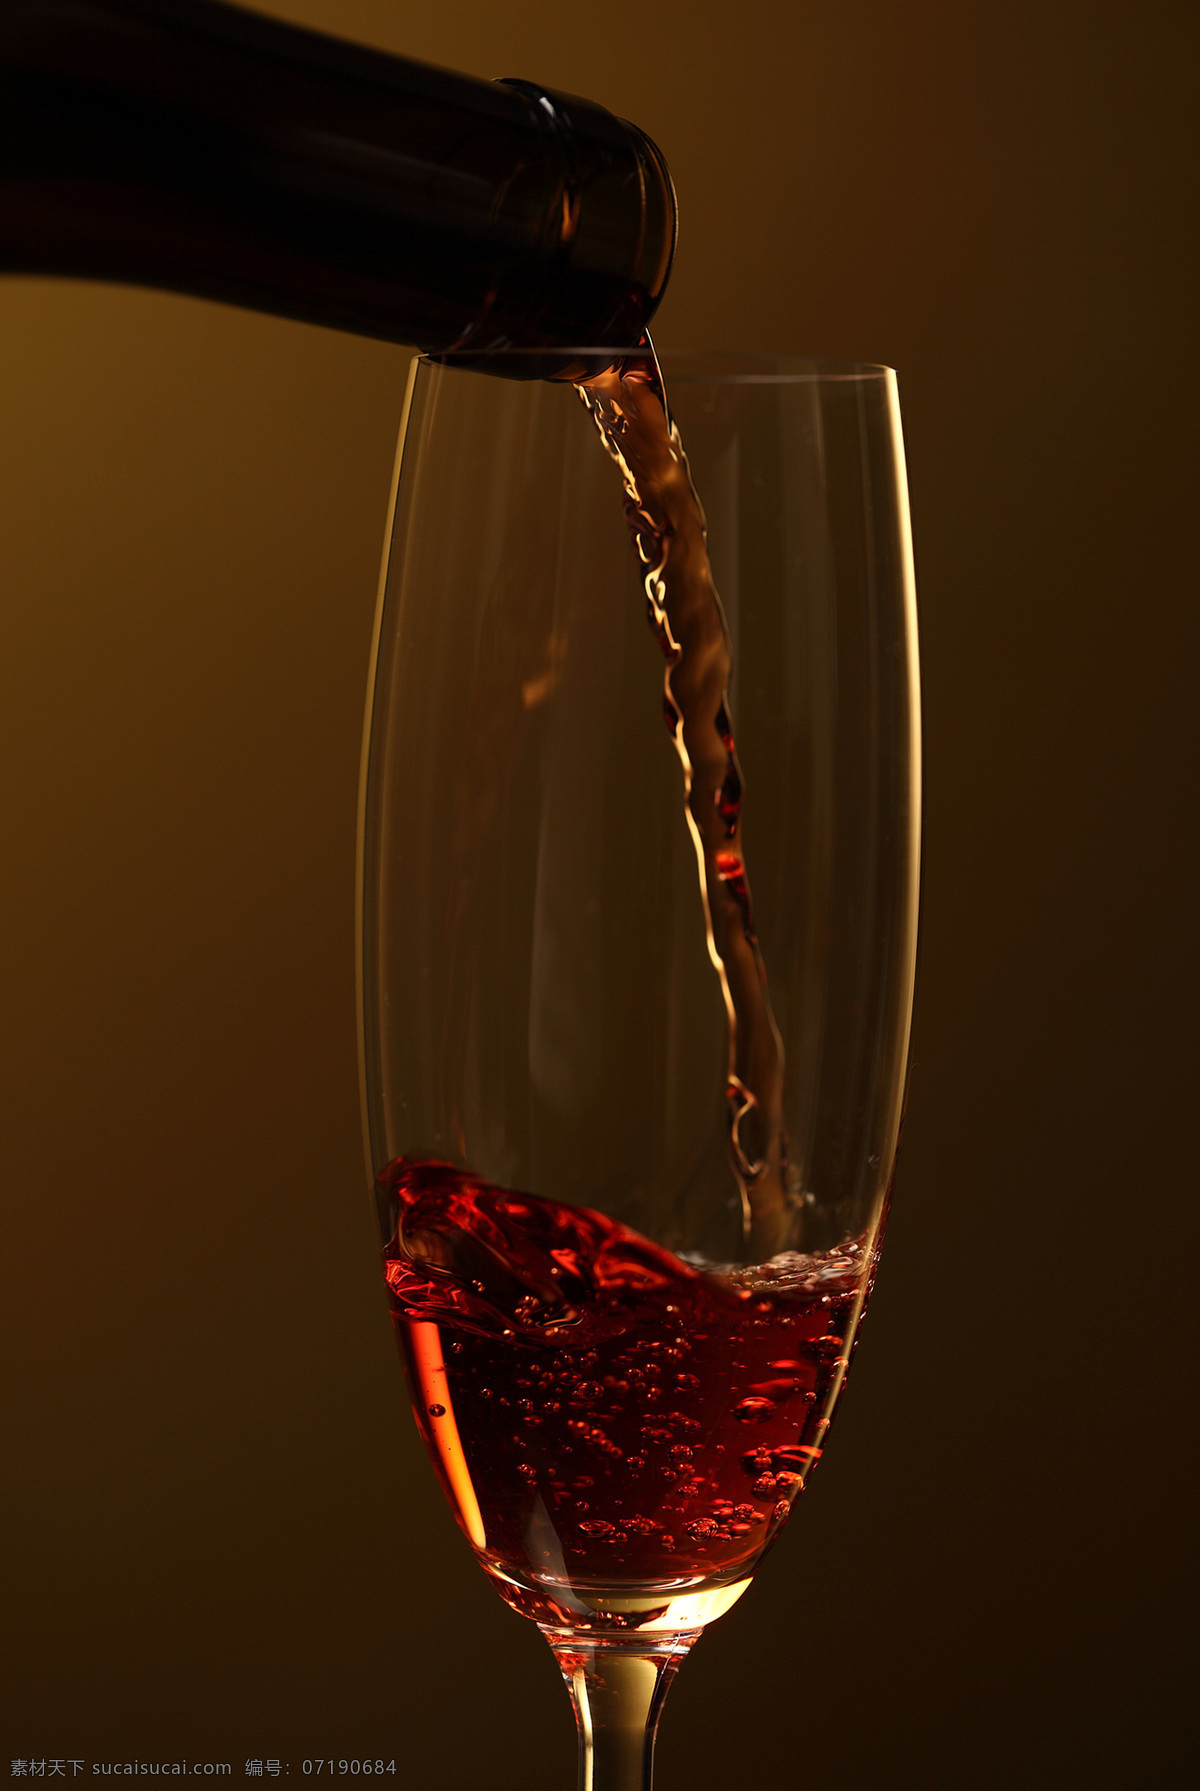 流动 葡萄 液 红酒 酒杯 酒液 葡萄酒 休闲饮品 酒水饮料 餐饮美食 酒类图片